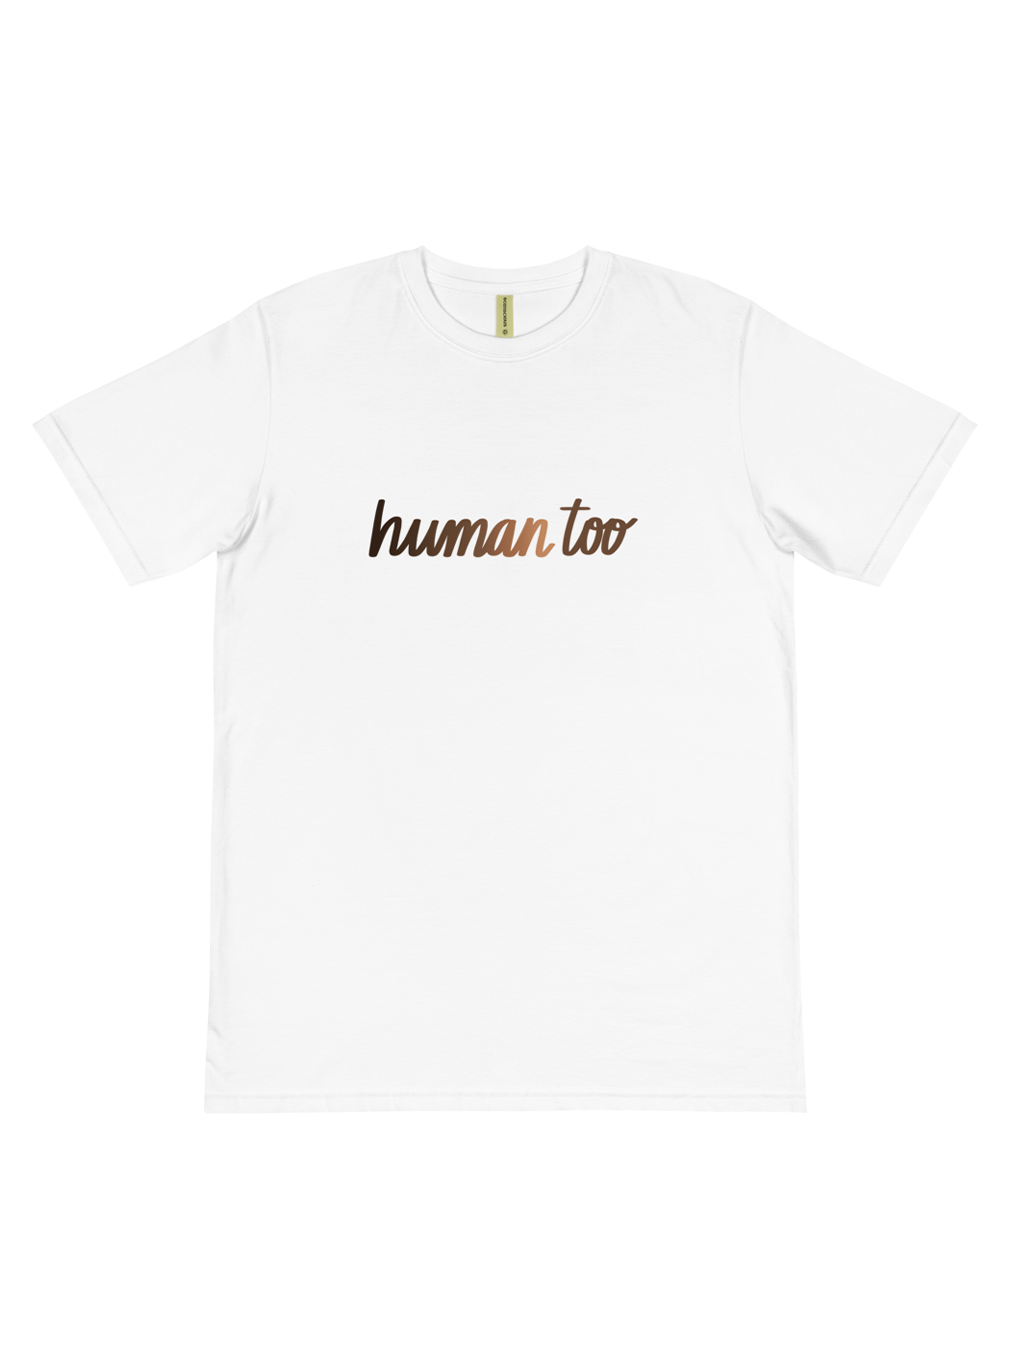 Human Too T-Shirt - White